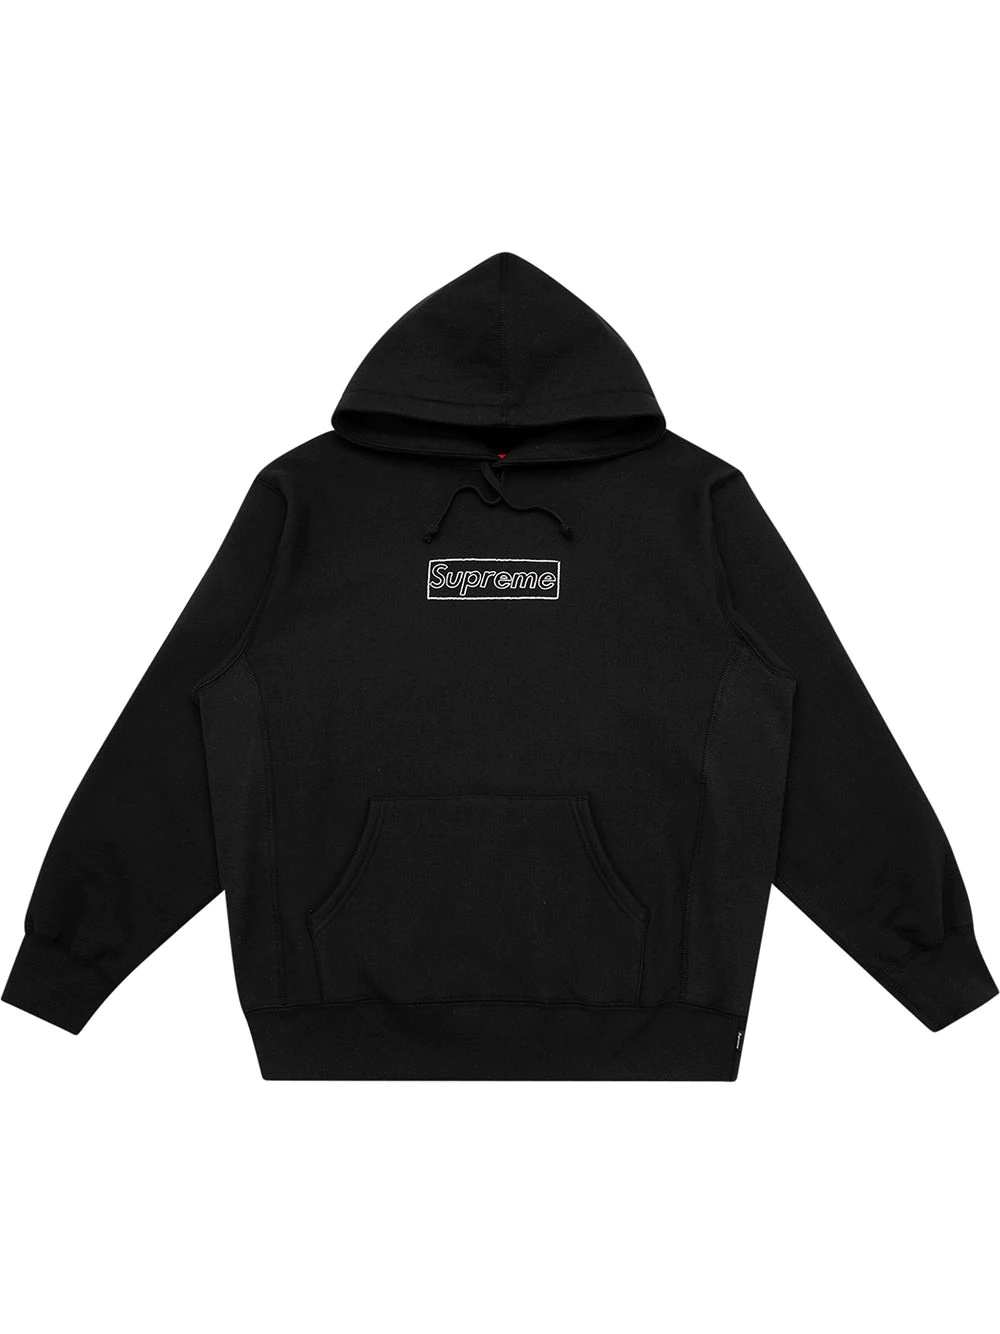 Supreme Kaws Chalk logo hoodie | REVERSIBLE